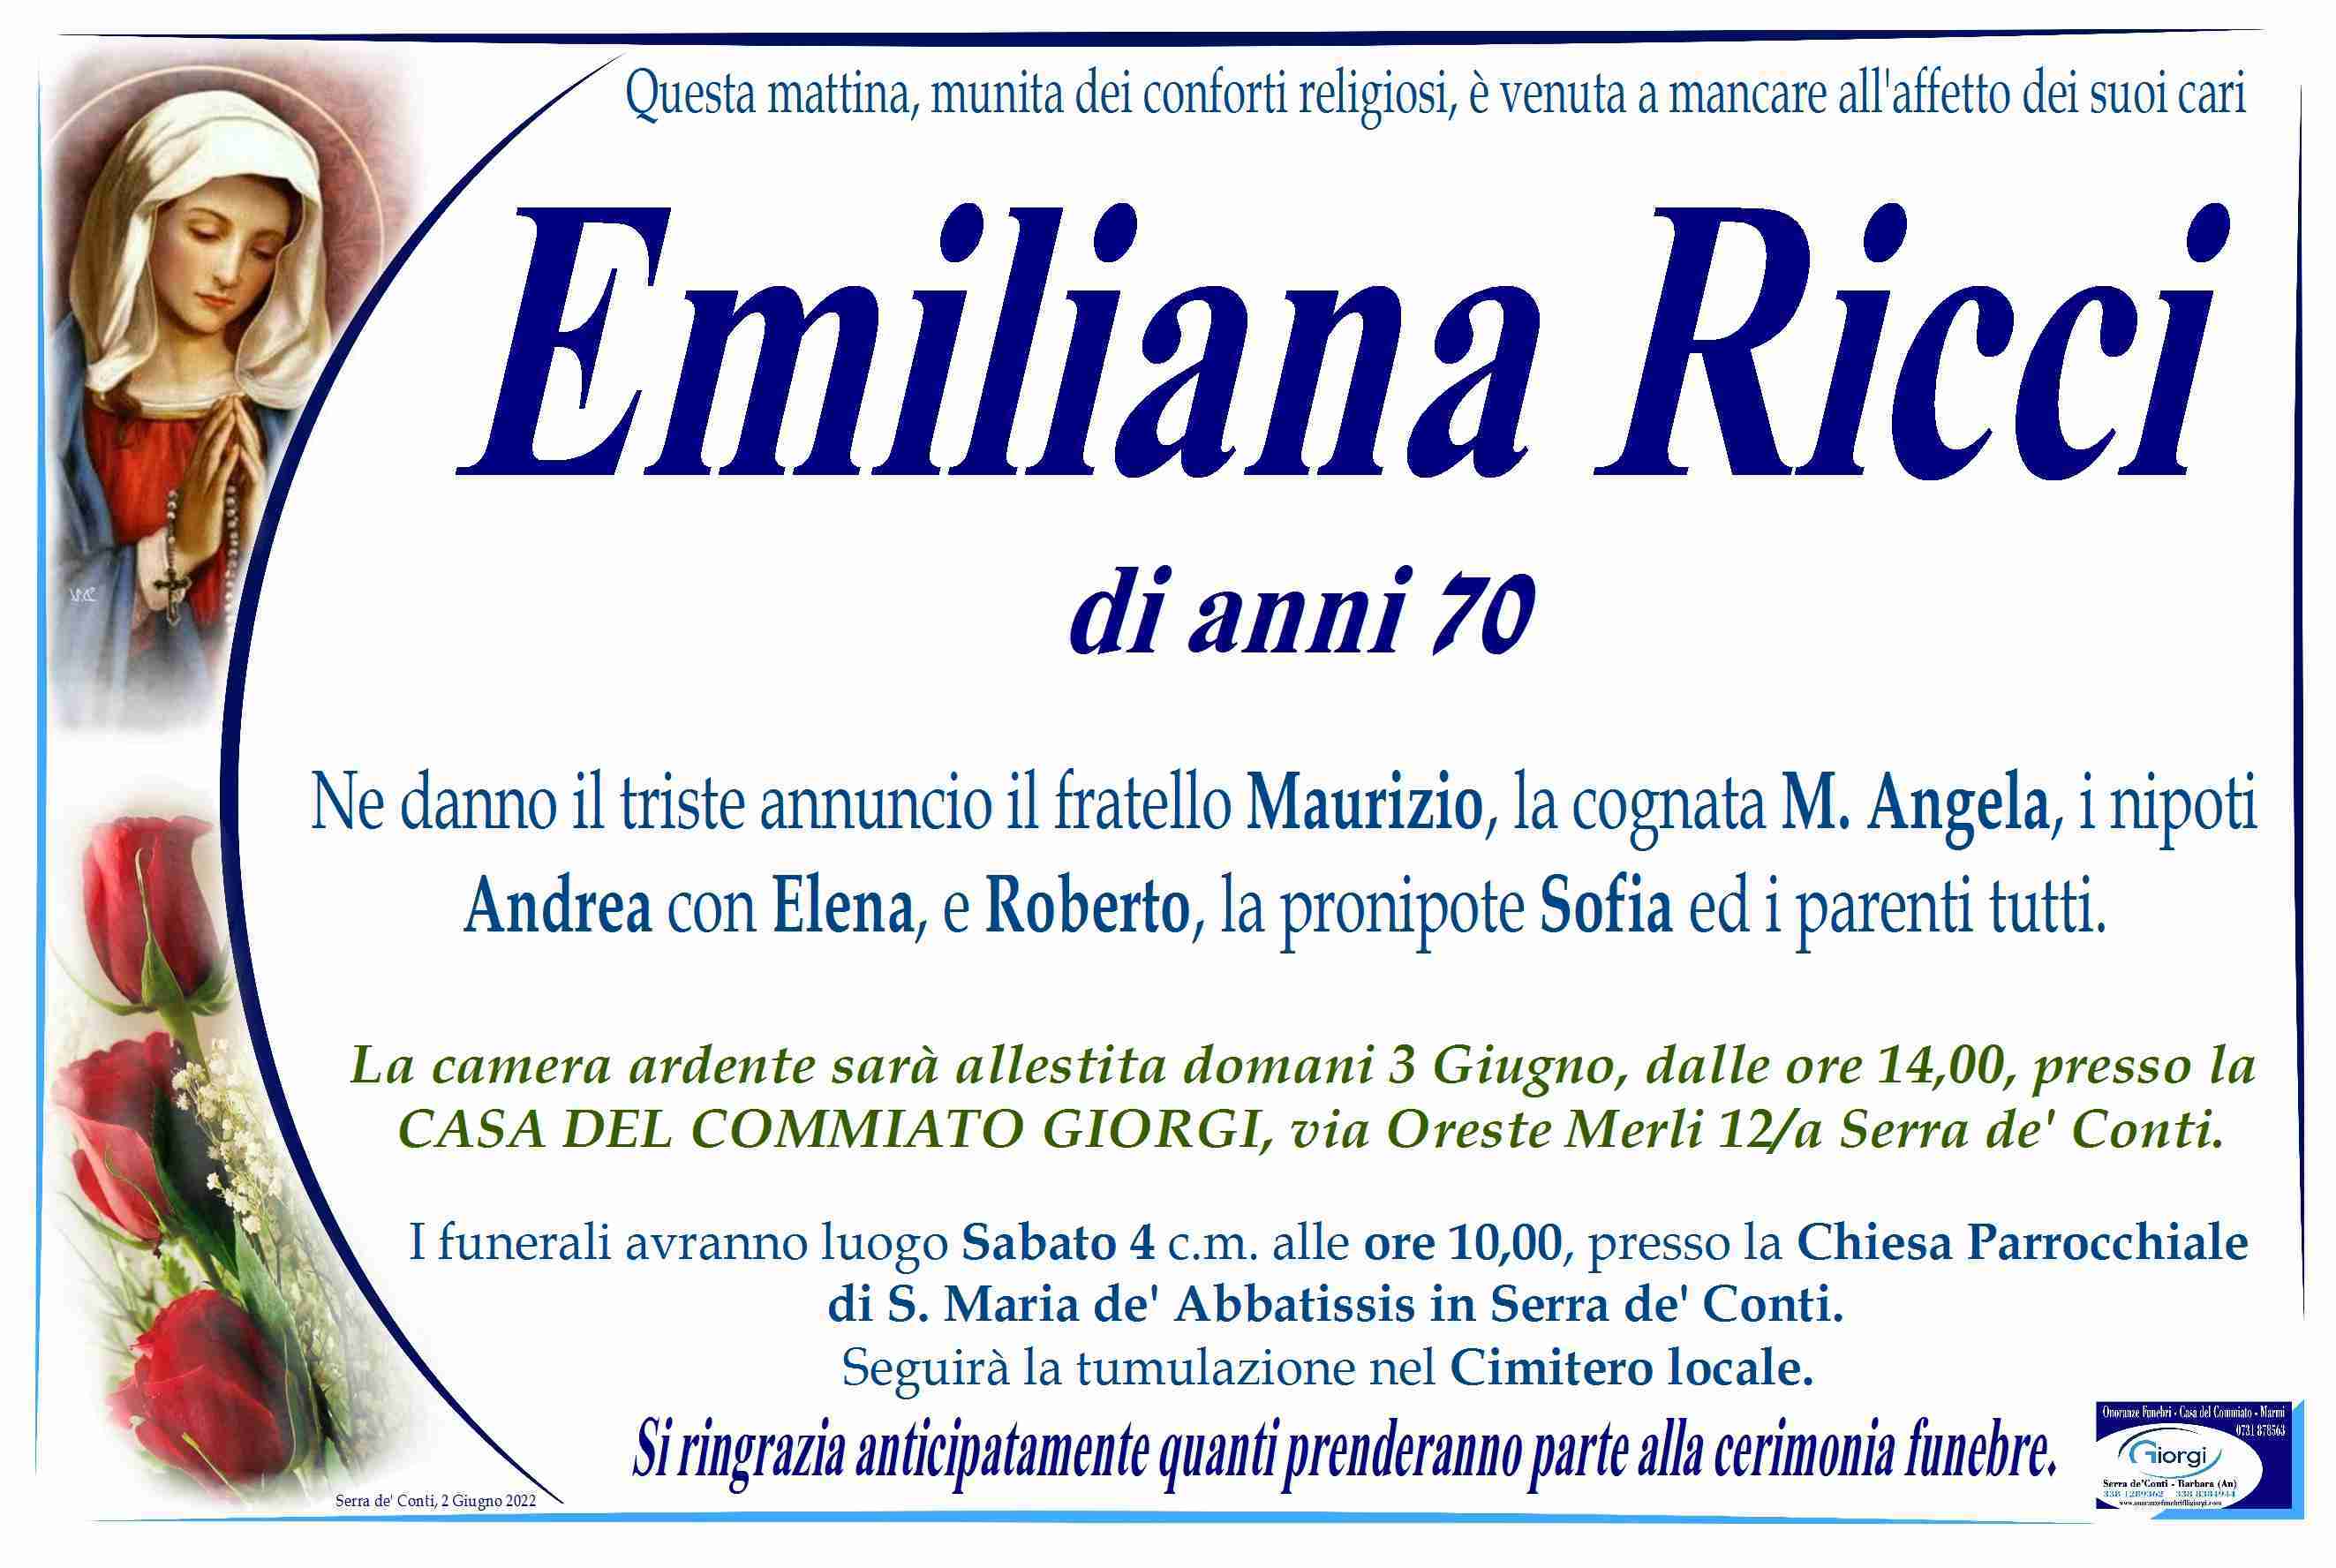 Emiliana Ricci